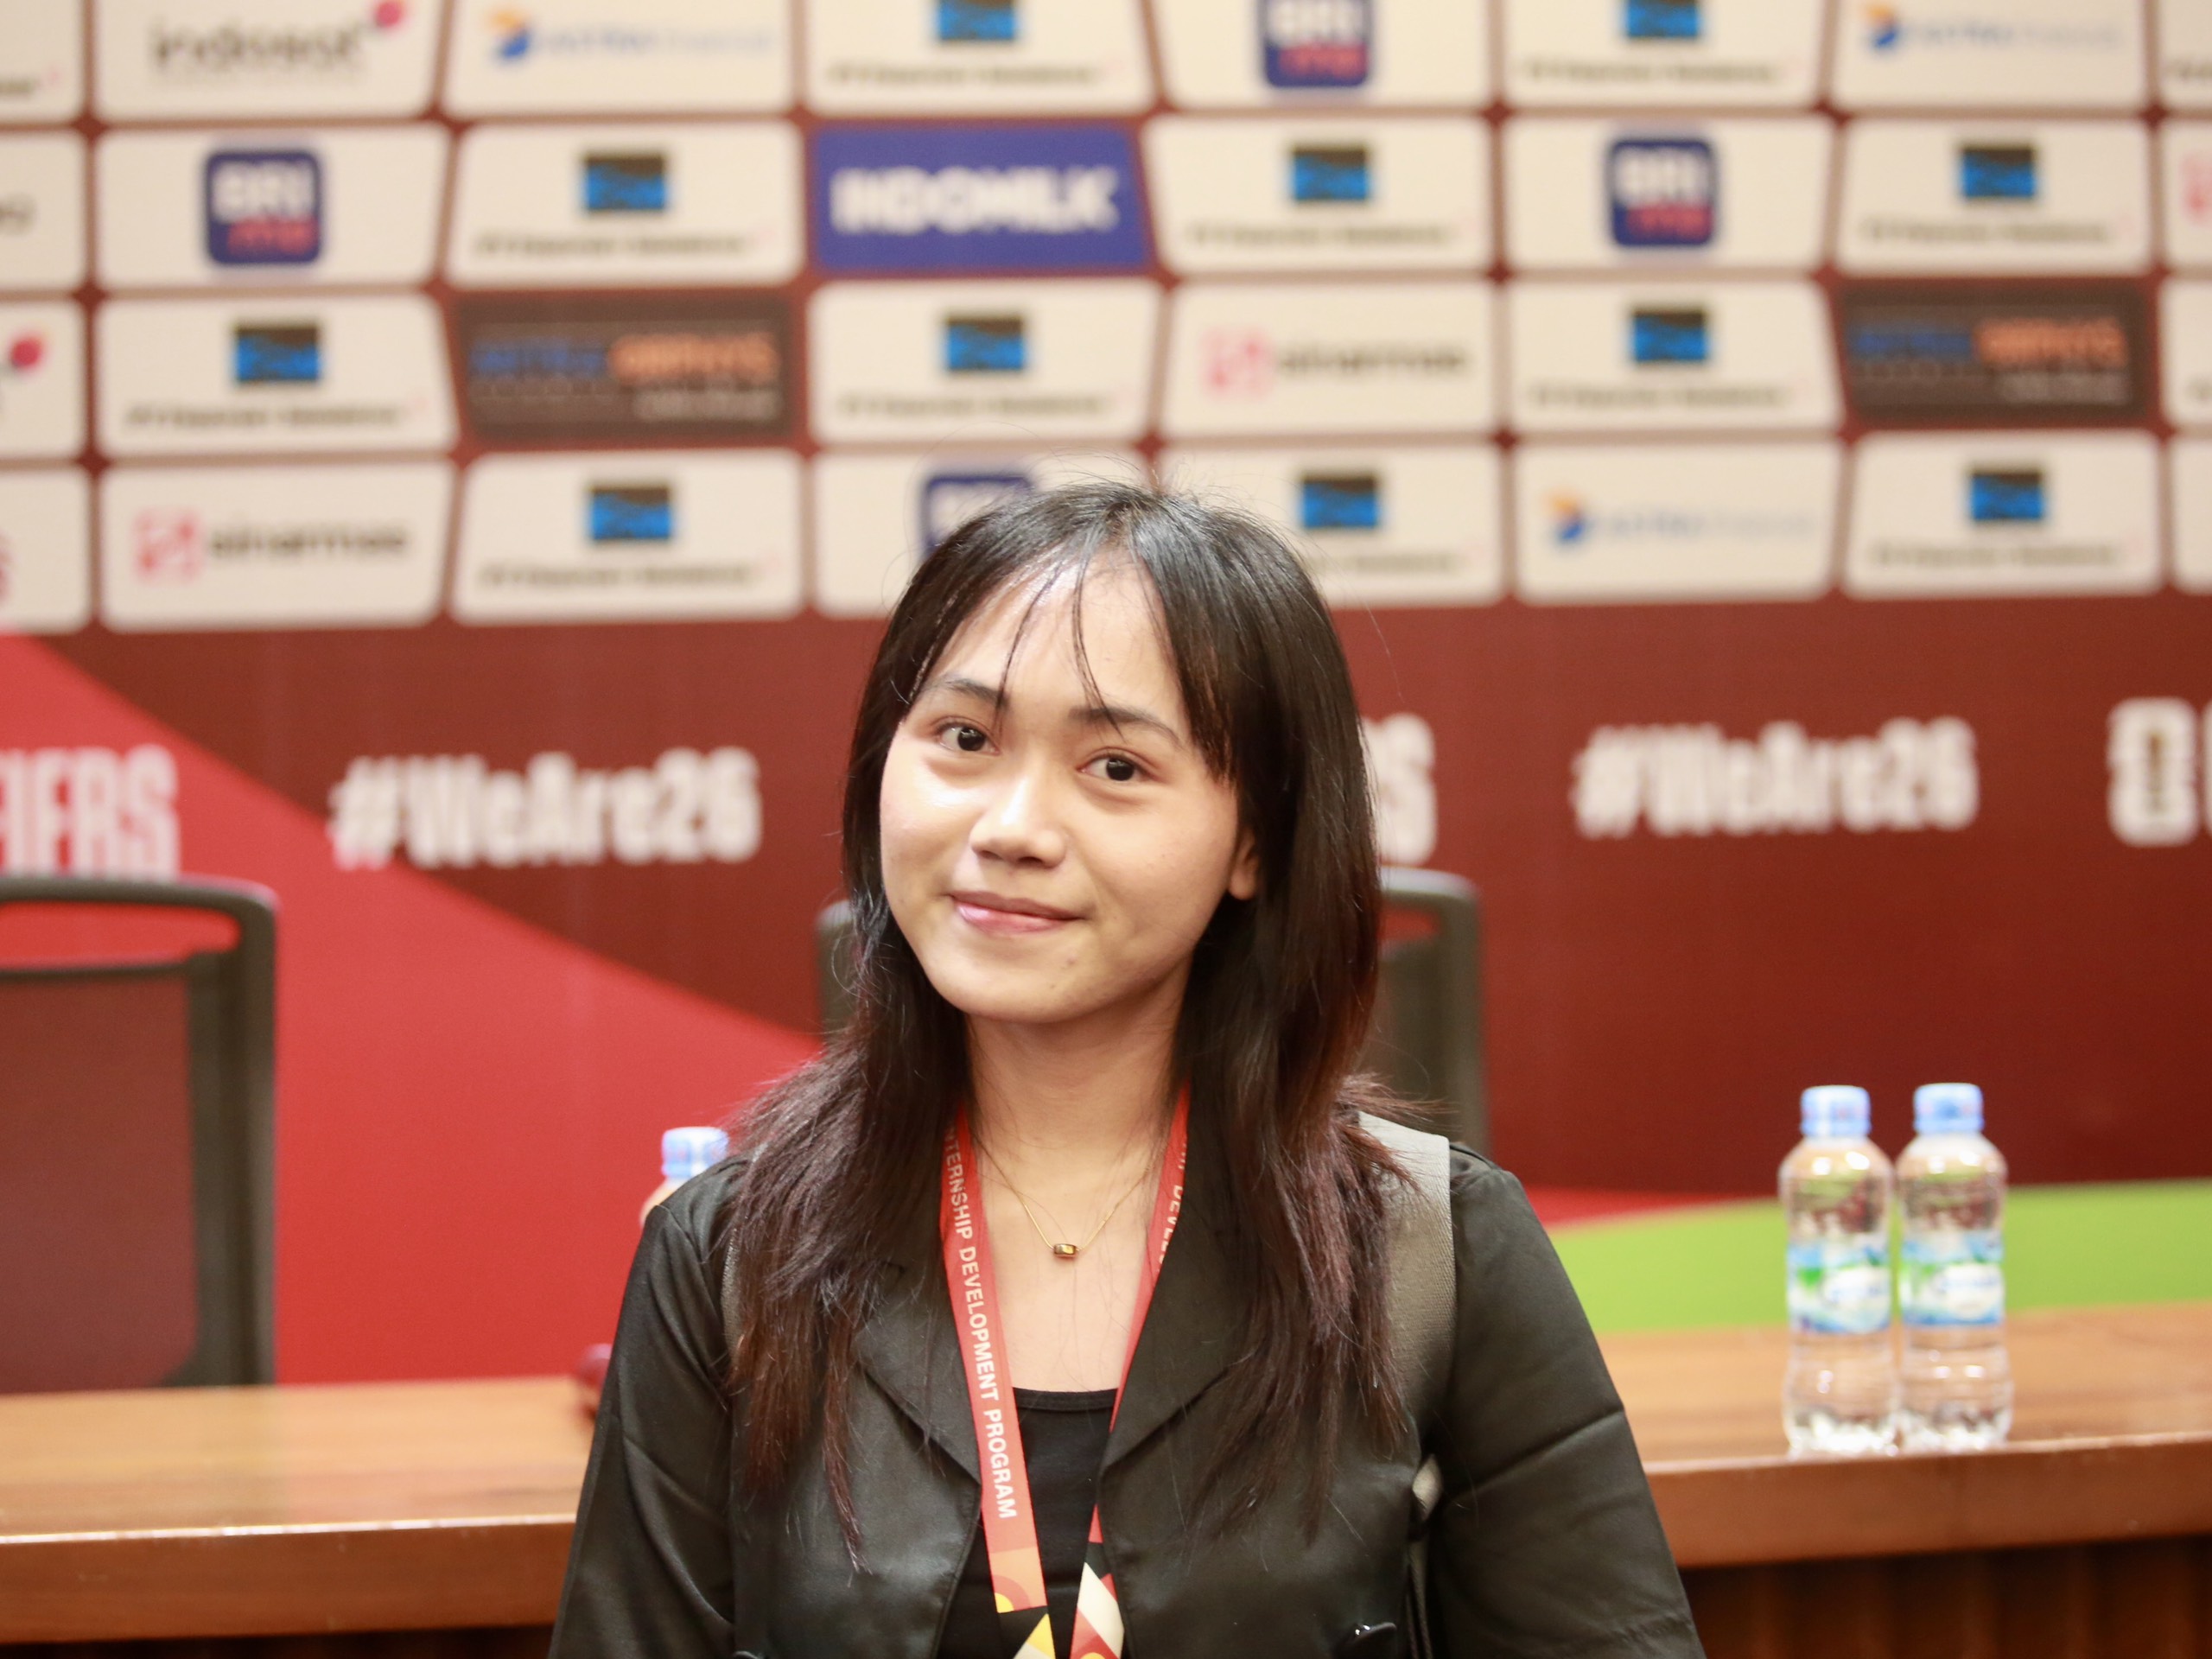 Nữ phóng viên Dian (CNN Indonesia) e dè khả năng ghi bàn của Tiến Linh nhất